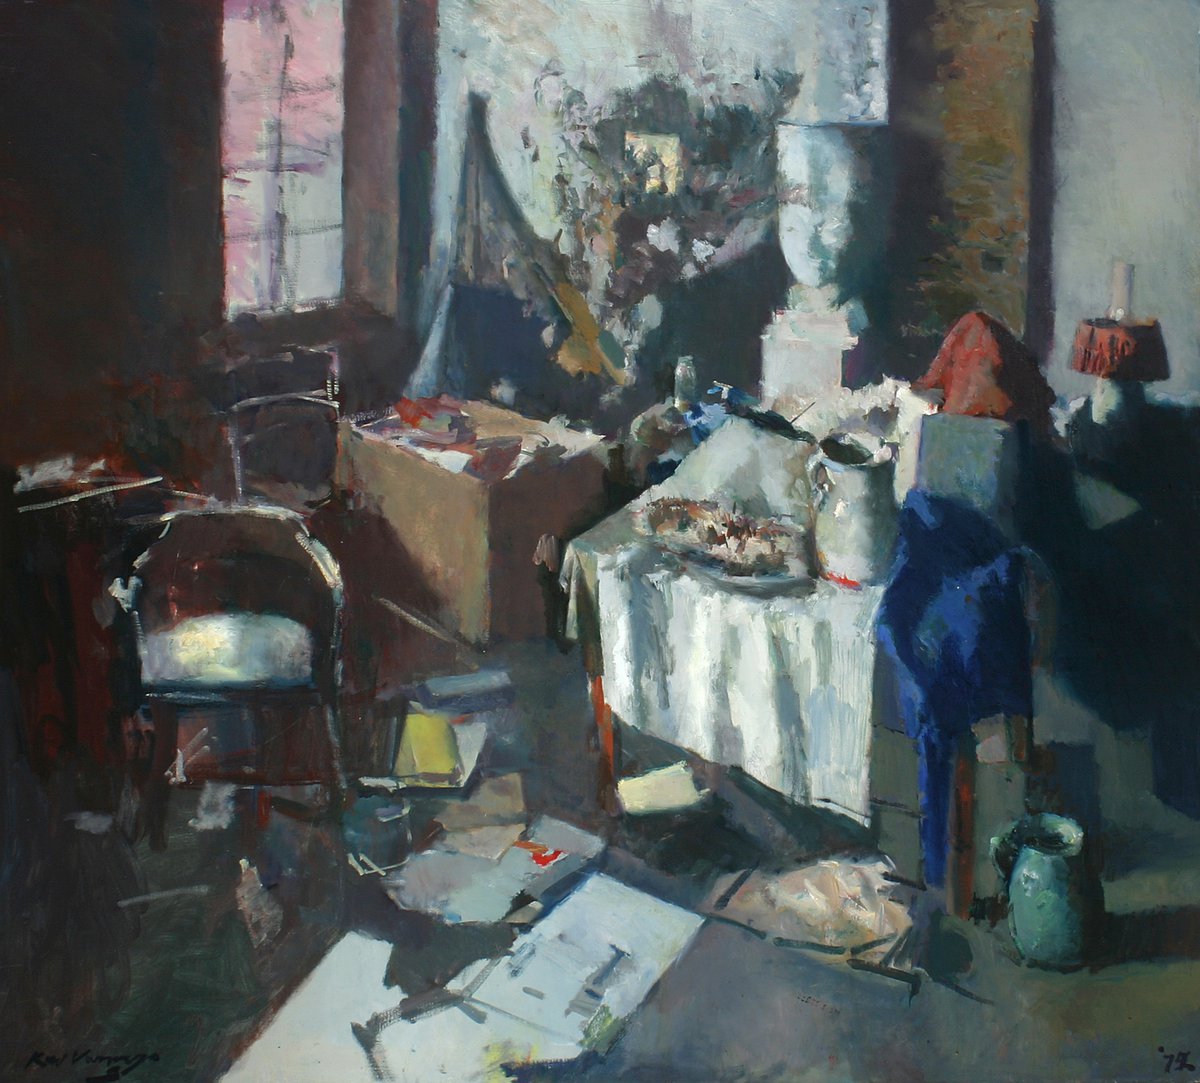 Het schilderij weergeeft een rommelig atelier. Er zijn verschillende voorwerpen afgebeeld zoals stoelen, tafels en vazen